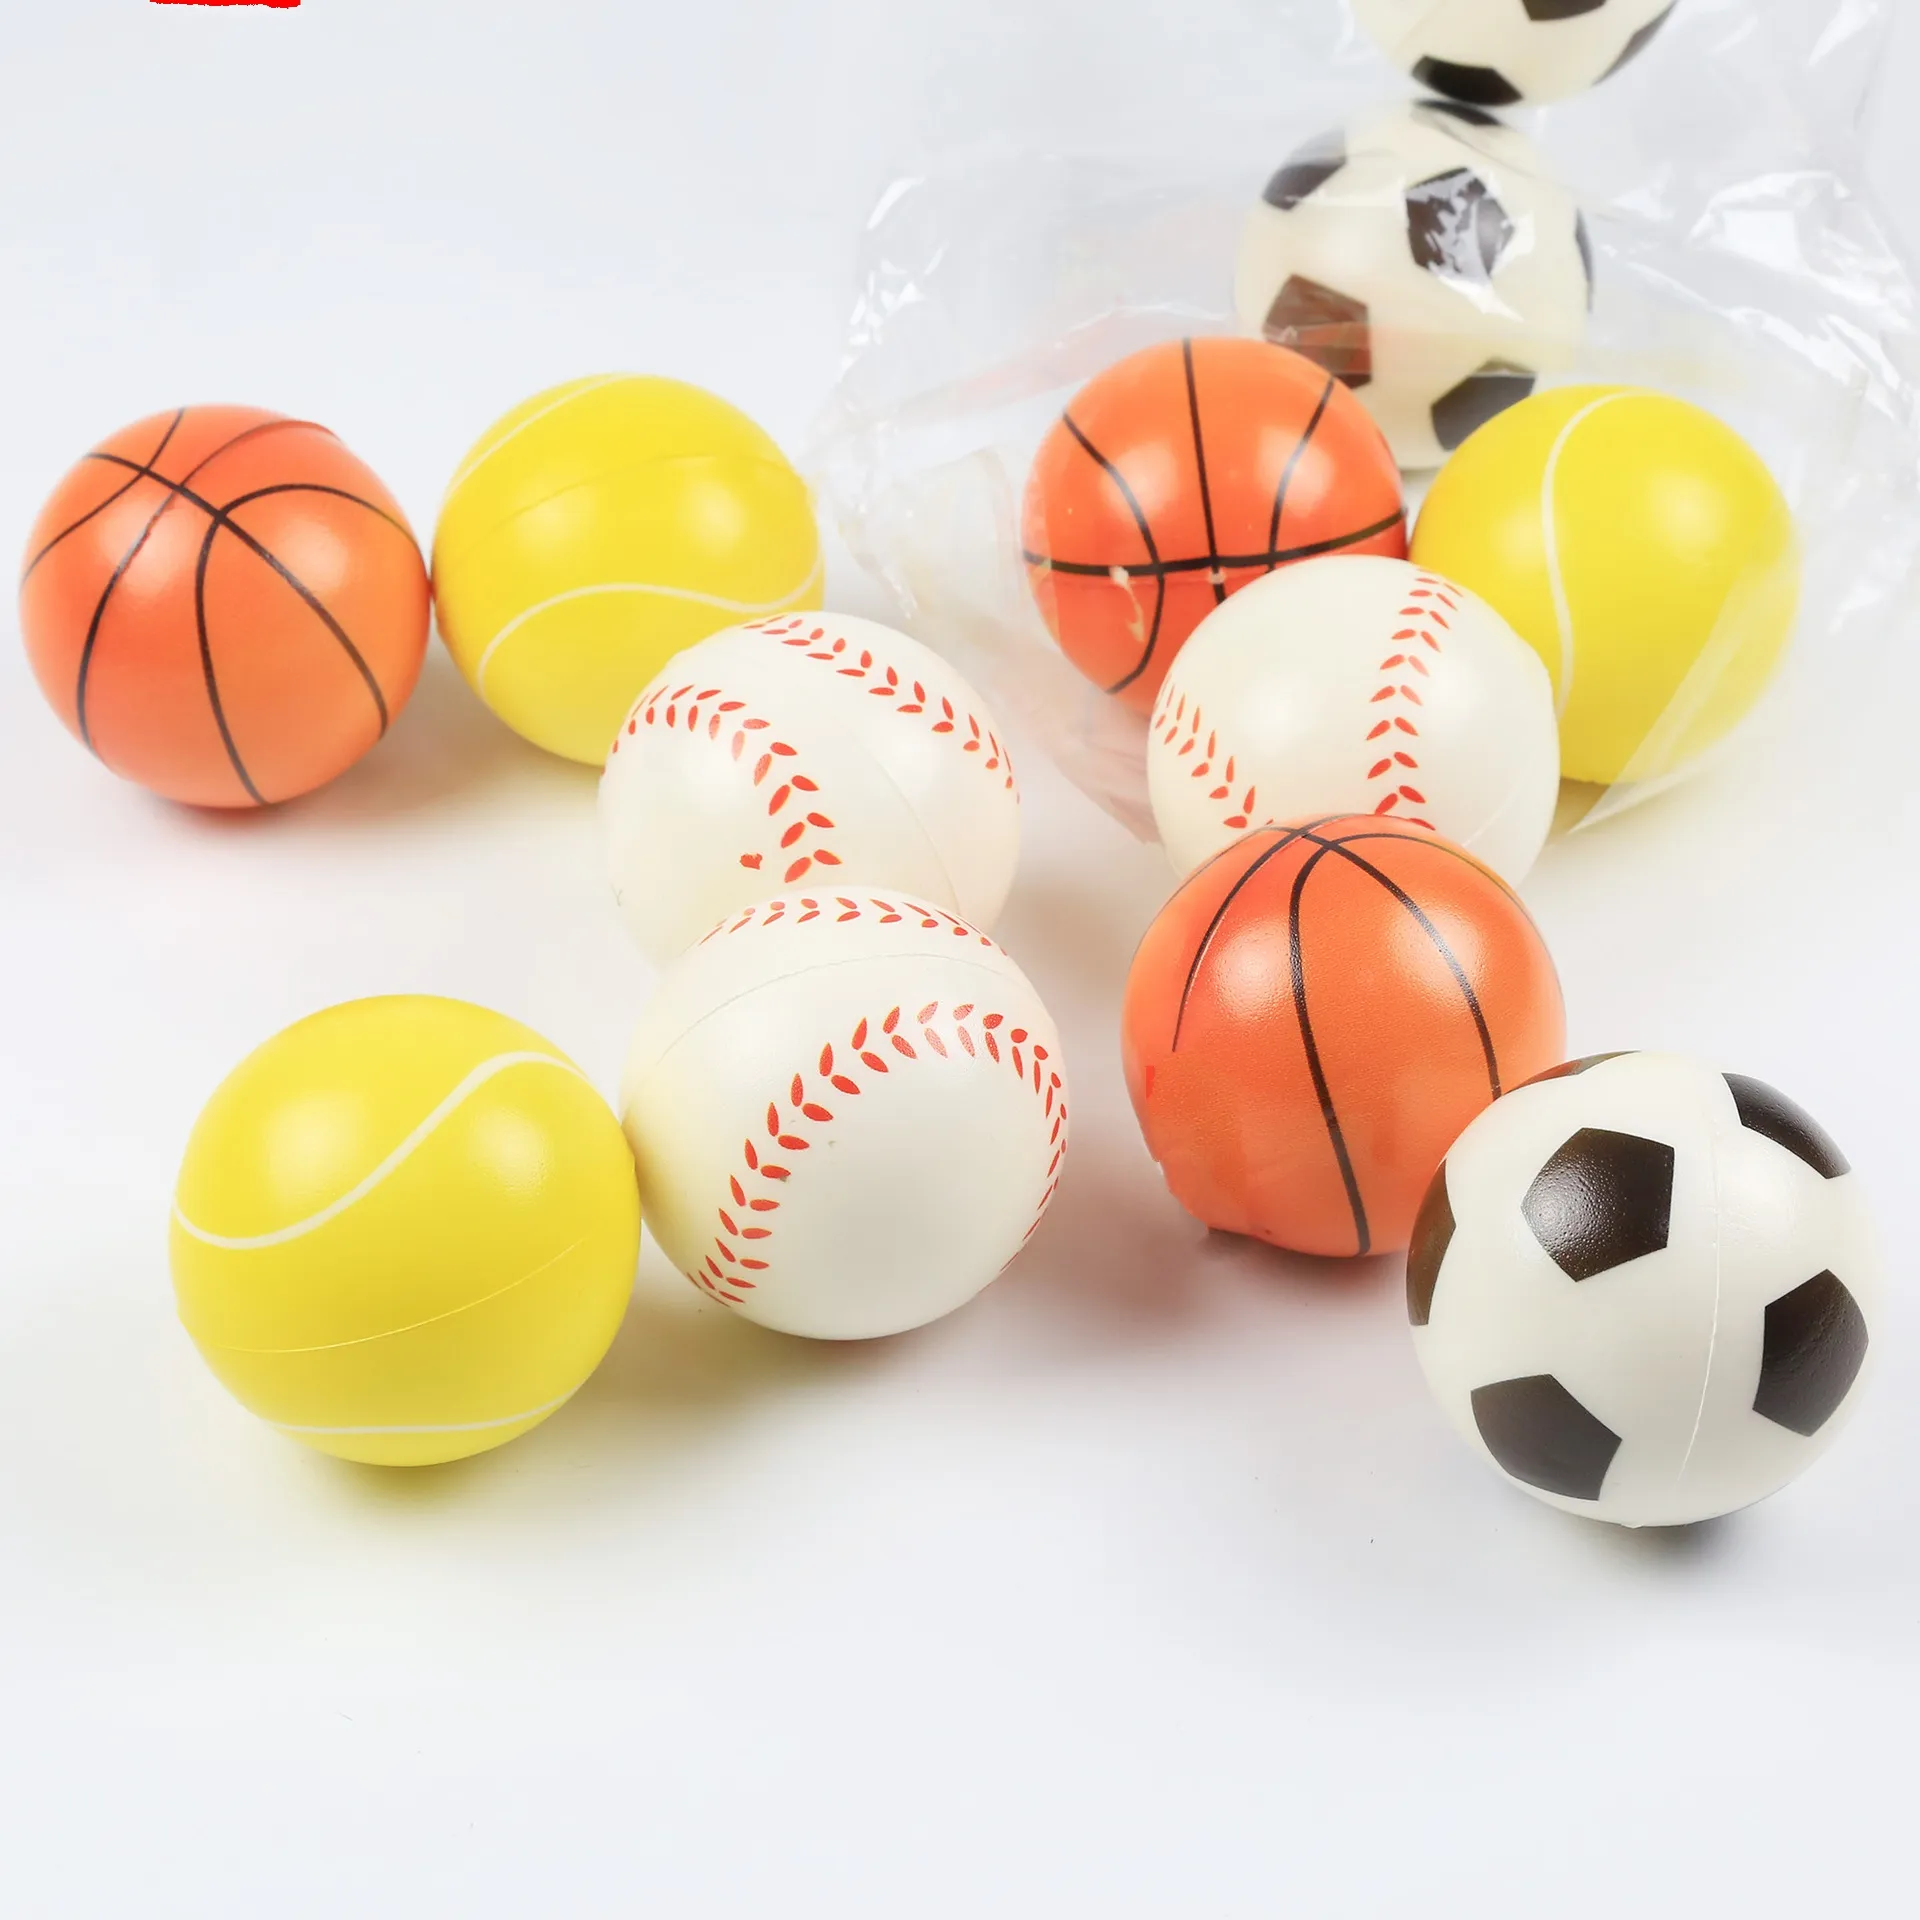 63mm Pu köpük spor stres topu Pu futbol basketbol tenis beyzbol oyuncak çocuklar için promosyon hediye topu özel Logo kabul